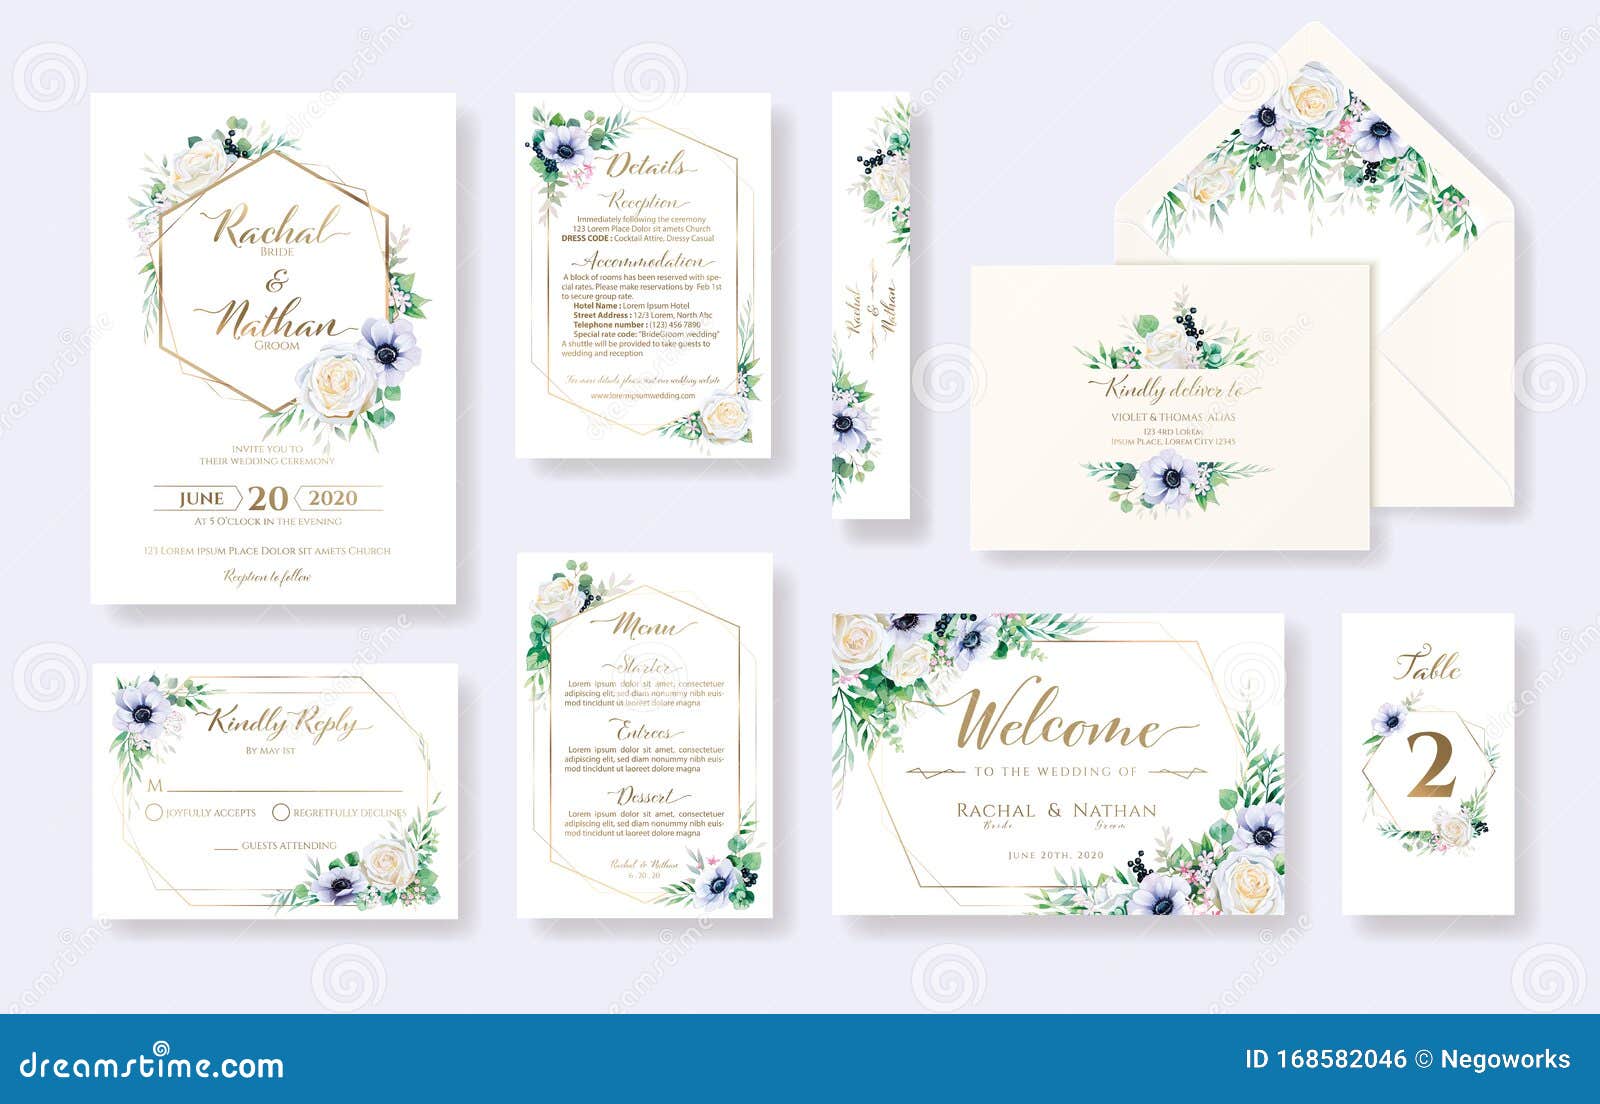 set of floral wedding invitation card, invite, rsvp, details